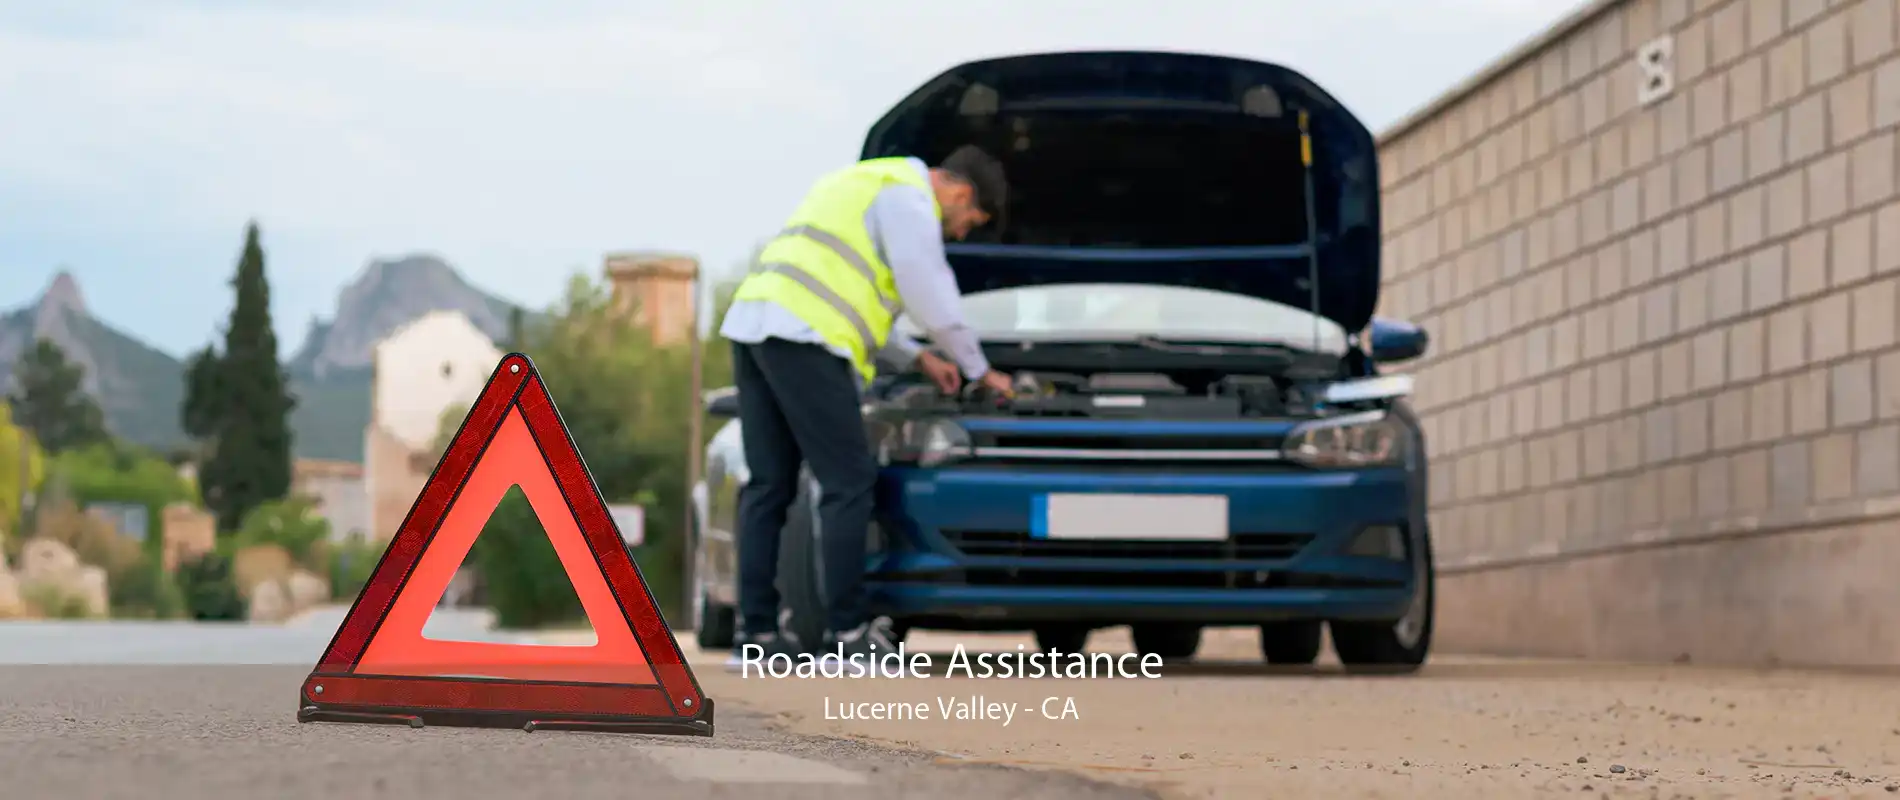 Roadside Assistance Lucerne Valley - CA